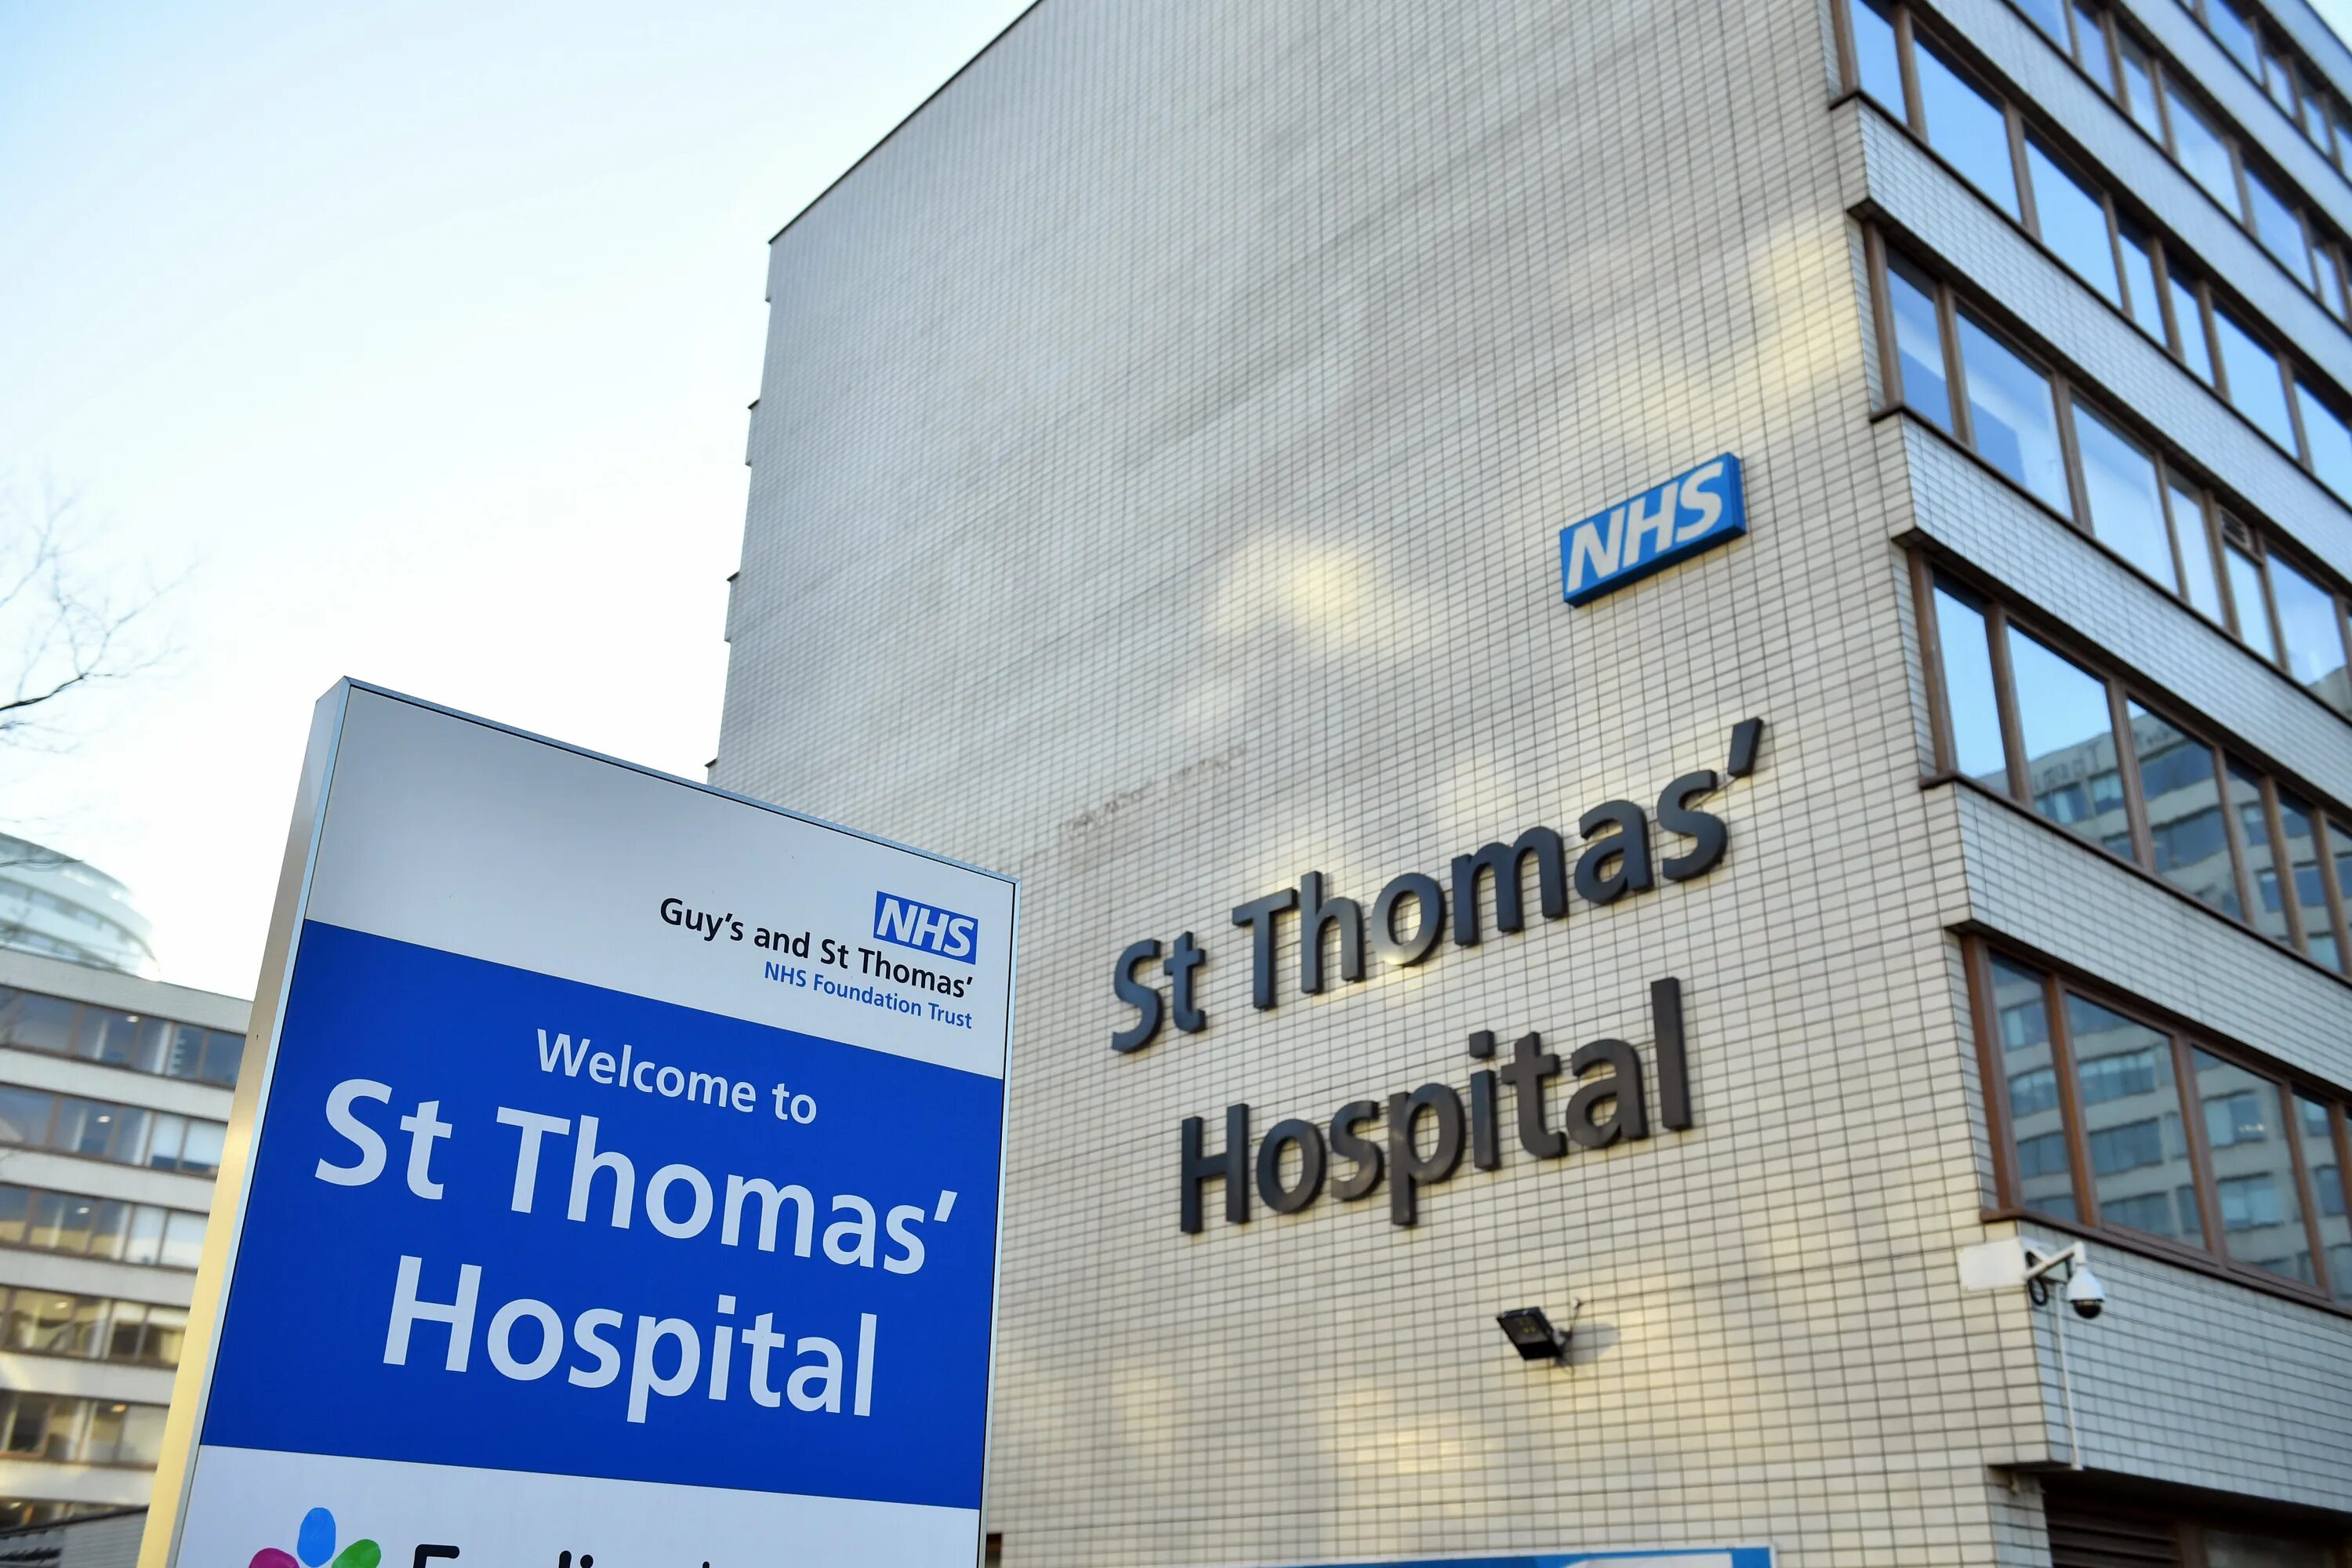 Come uk. St Thomas Hospital. St. Thomas' Hospital uk. St Thomas Hospital London. Hospitals in the uk.